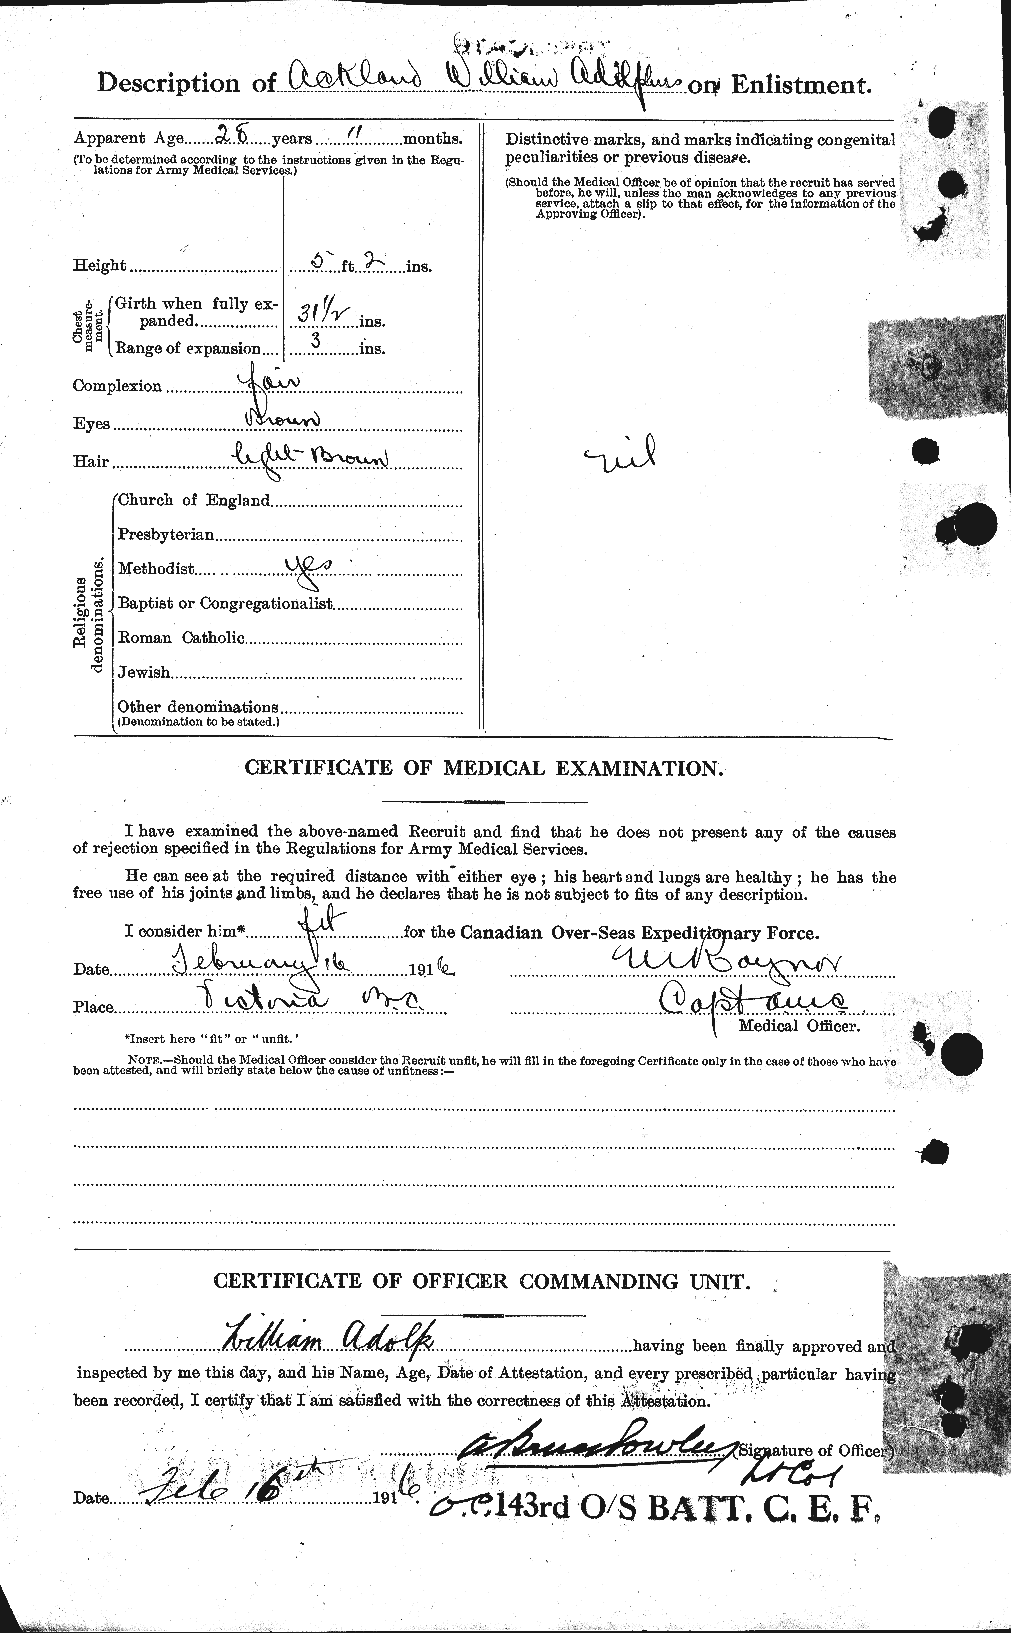 Dossiers du Personnel de la Première Guerre mondiale - CEC 200693b